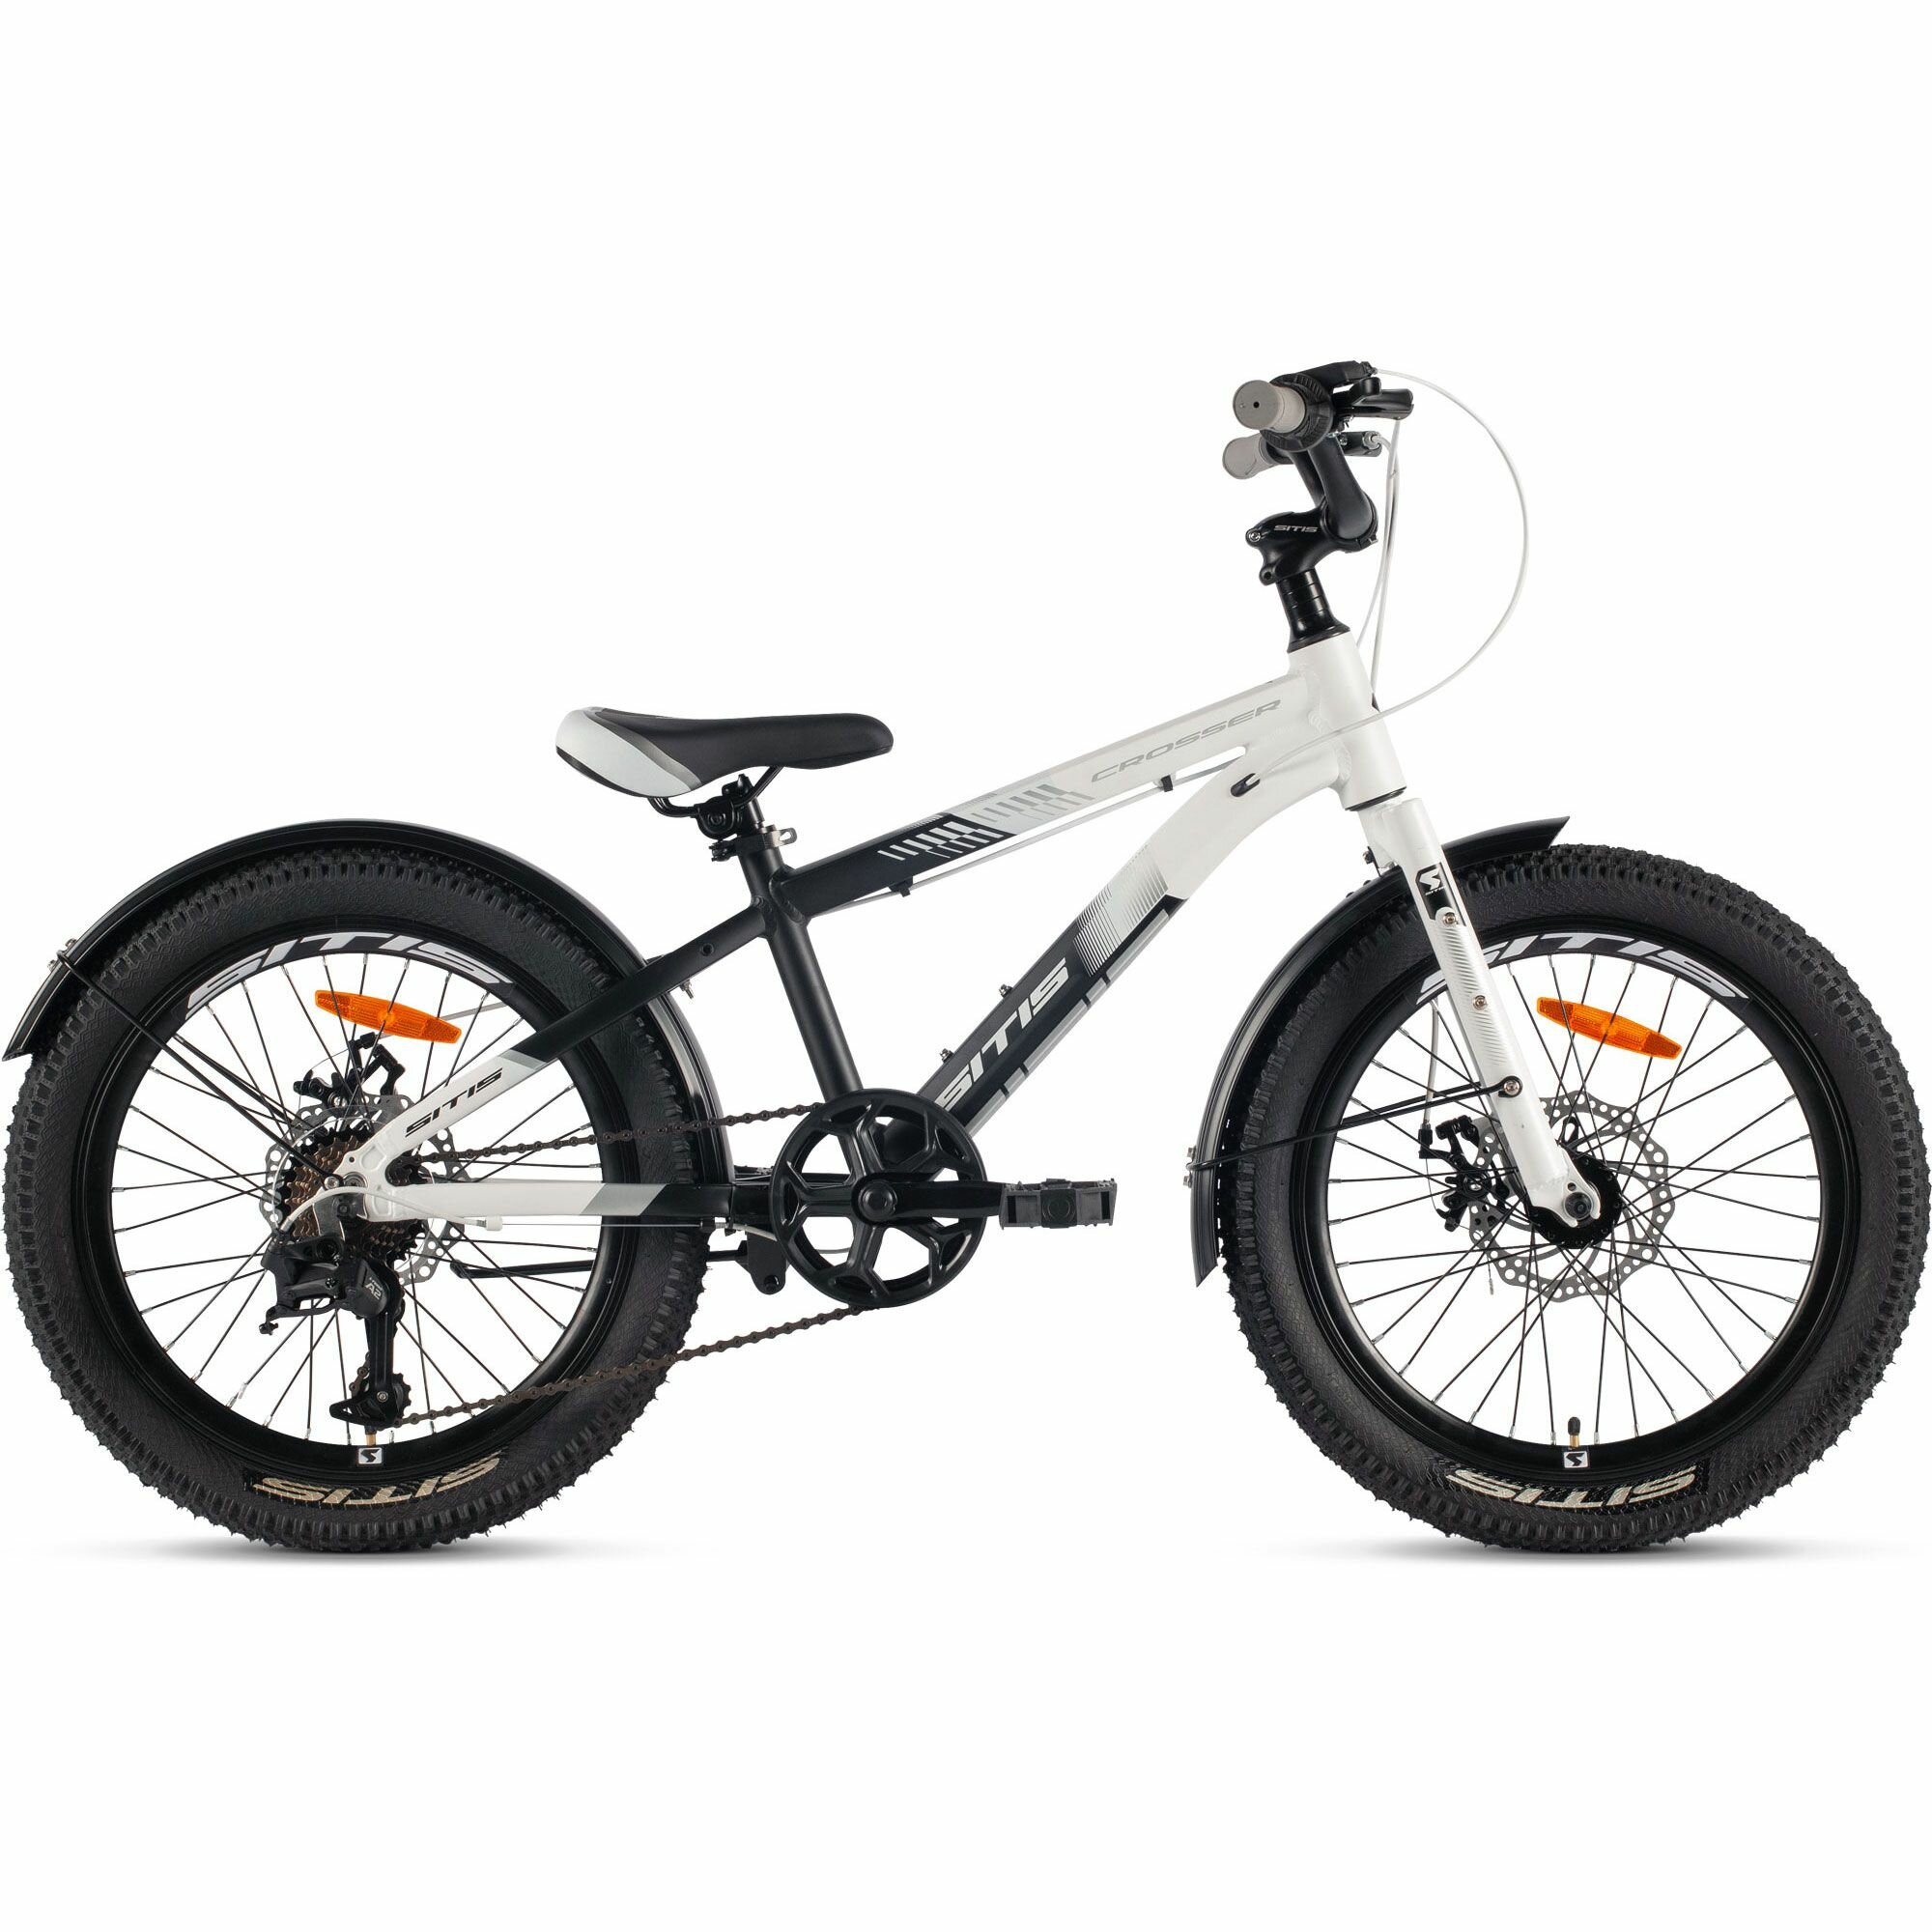 Велосипед горный SITIS CROSSER SCR24MD 24" (2024), хардтейл, детский, для мальчиков, алюминиевая рама, 7 скоростей, дисковые механические тормоза, цвет White-Black-Grey, черный/серый/желтый цвет, размер рамы 12", для роста 130-145 см